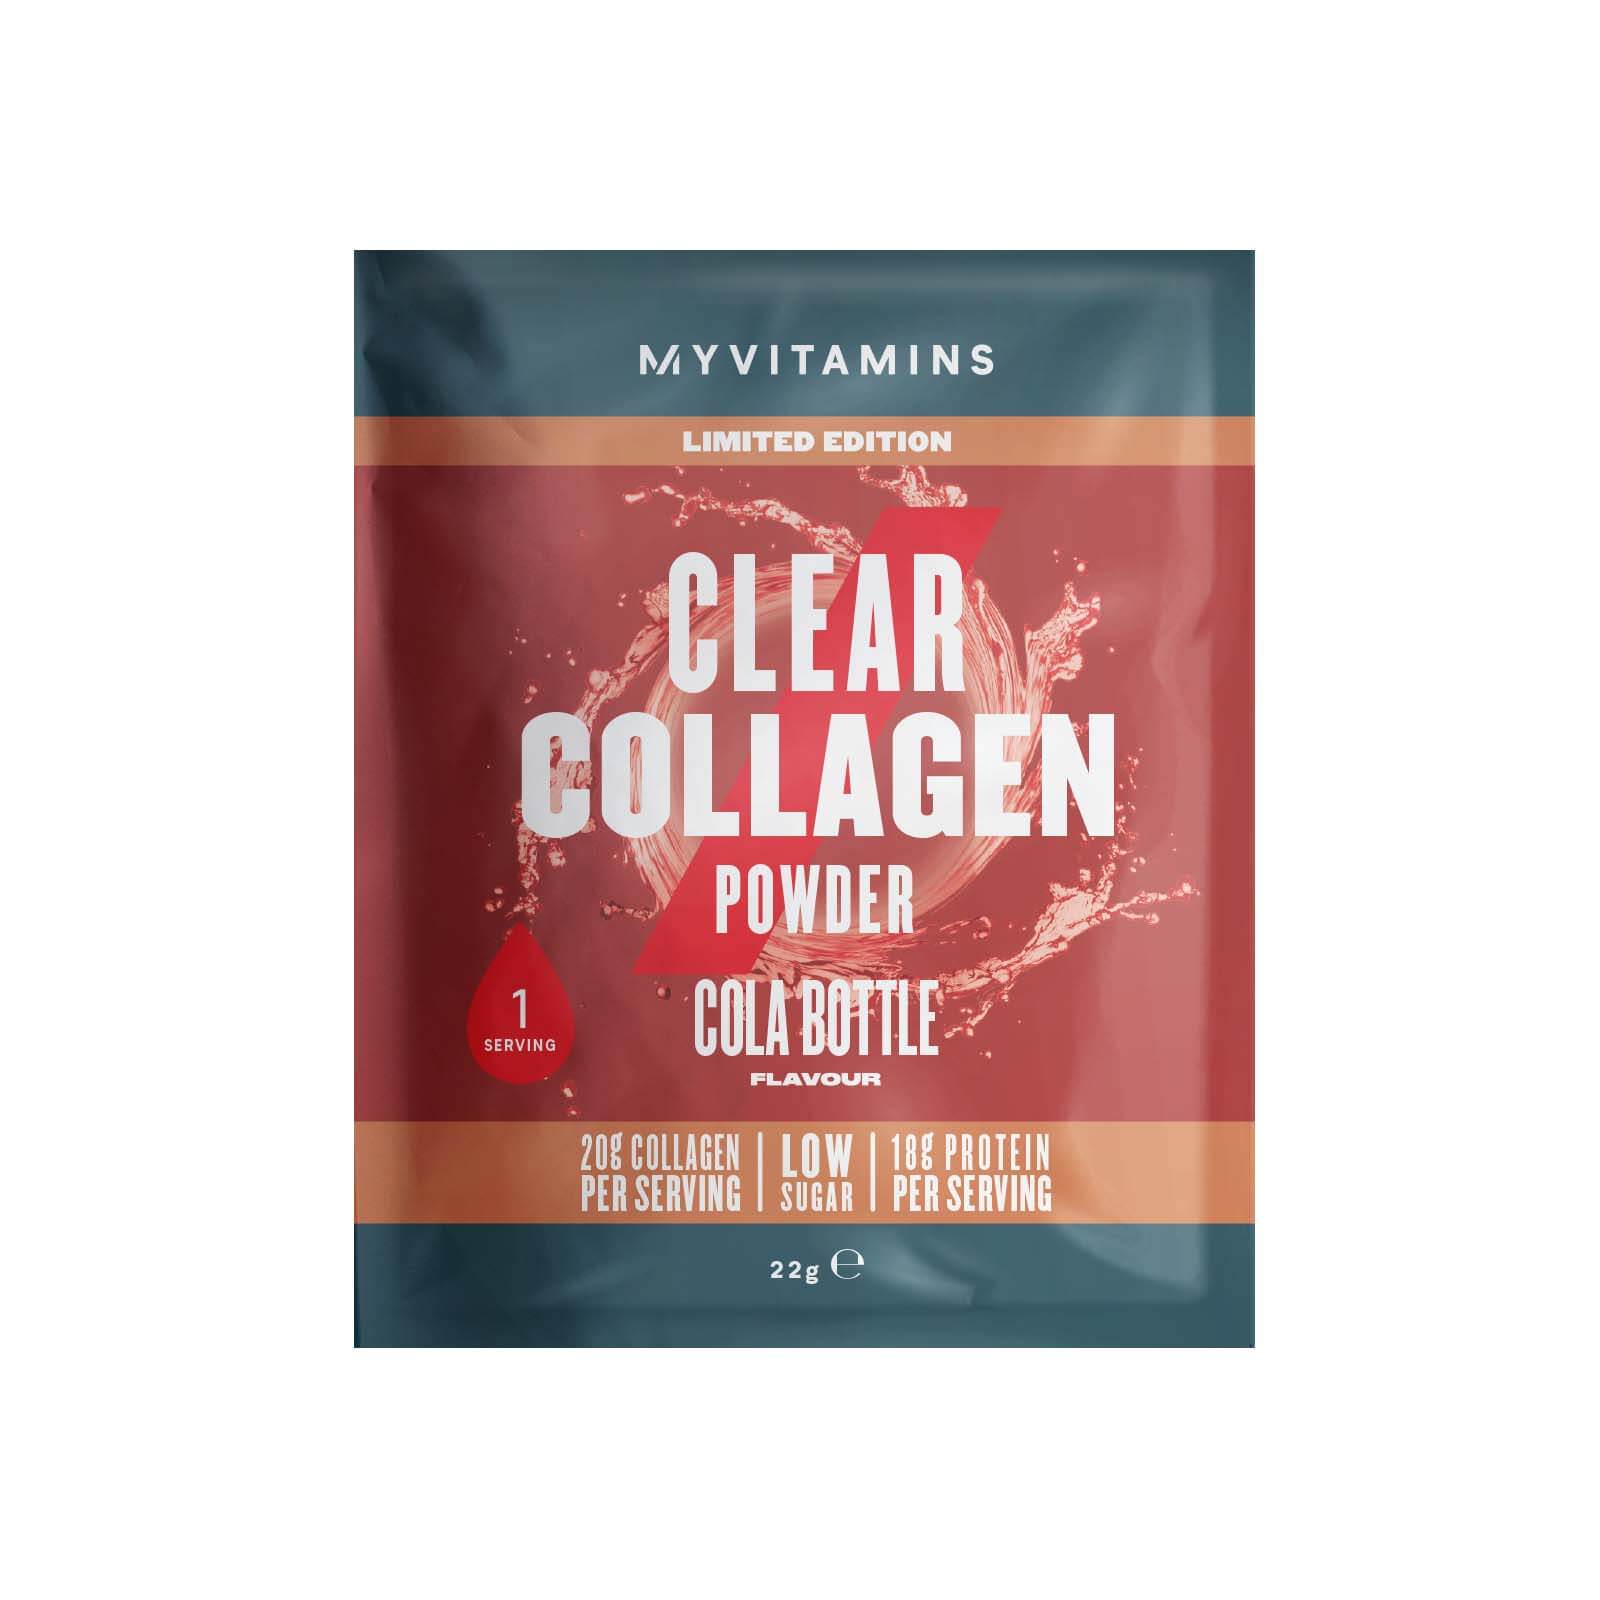 Collagen Powder (Sample) - 1servings - Cola Bottle